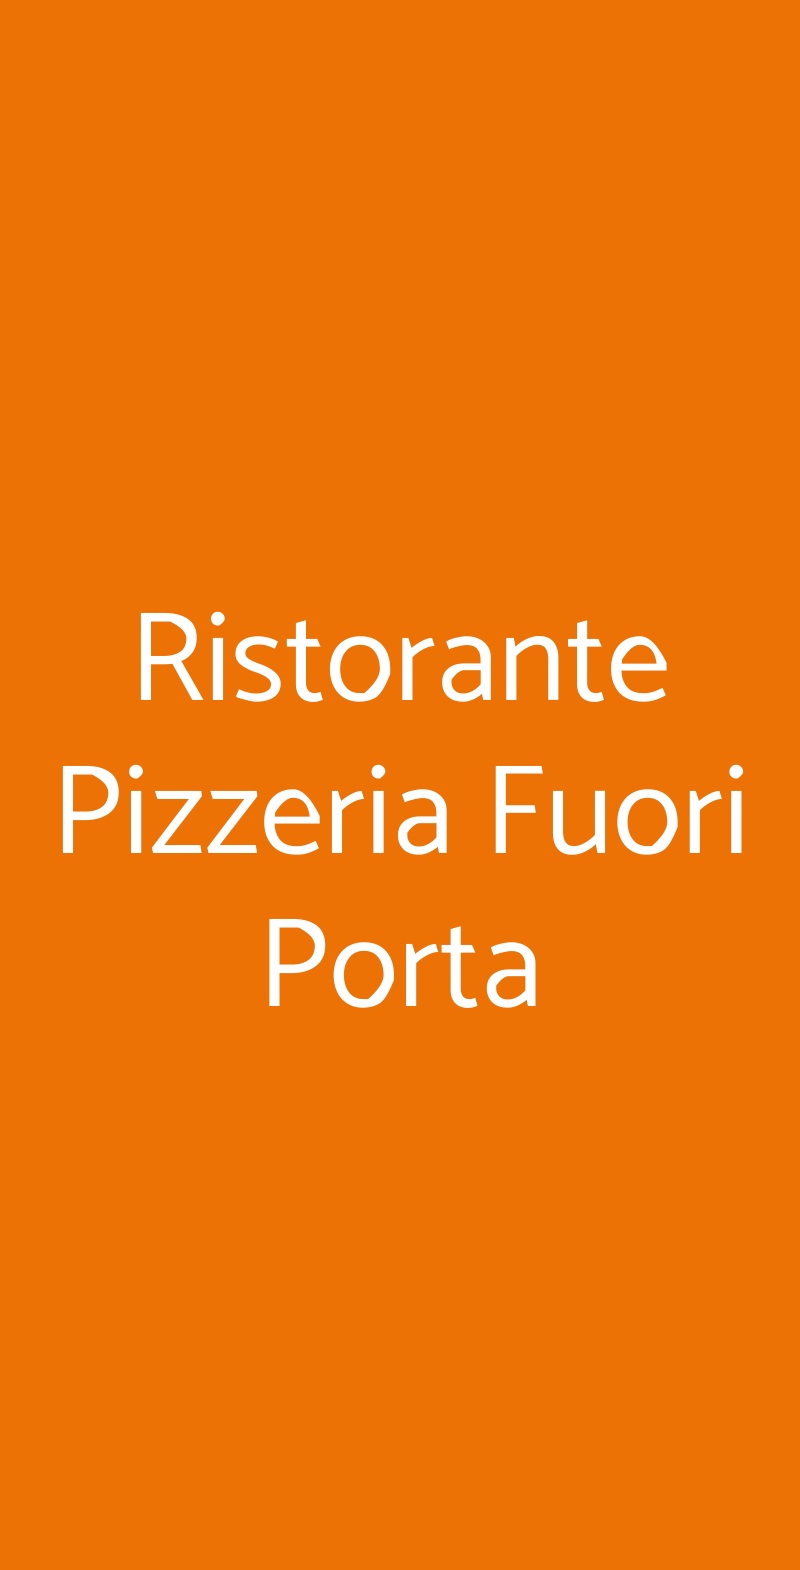 Ristorante Pizzeria Fuori Porta San Gimignano menù 1 pagina